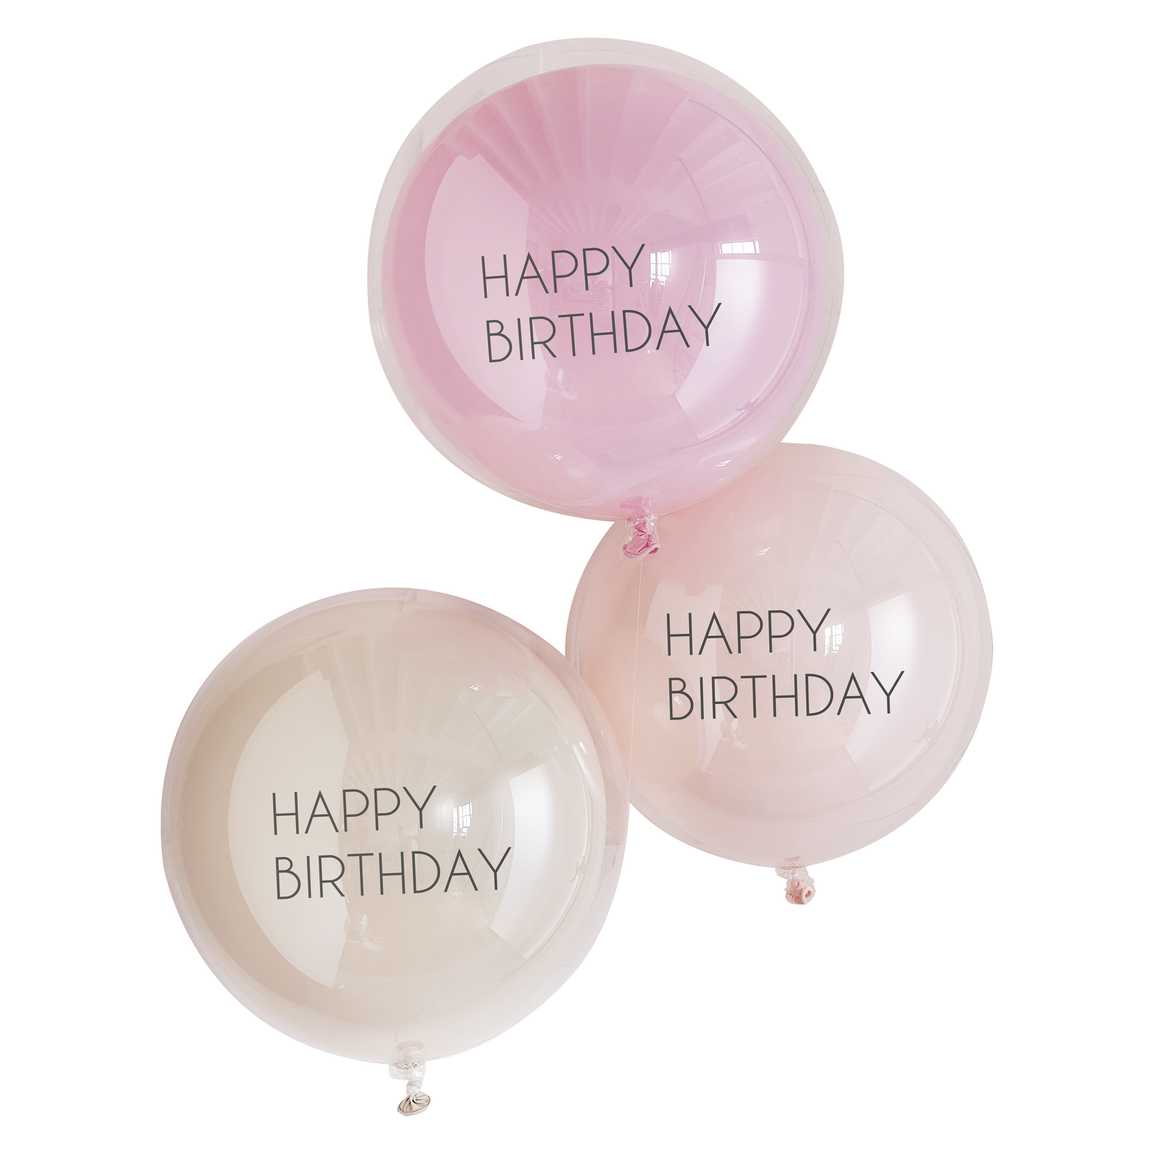 Happy Birthday dobbeltballoner 3 stk.